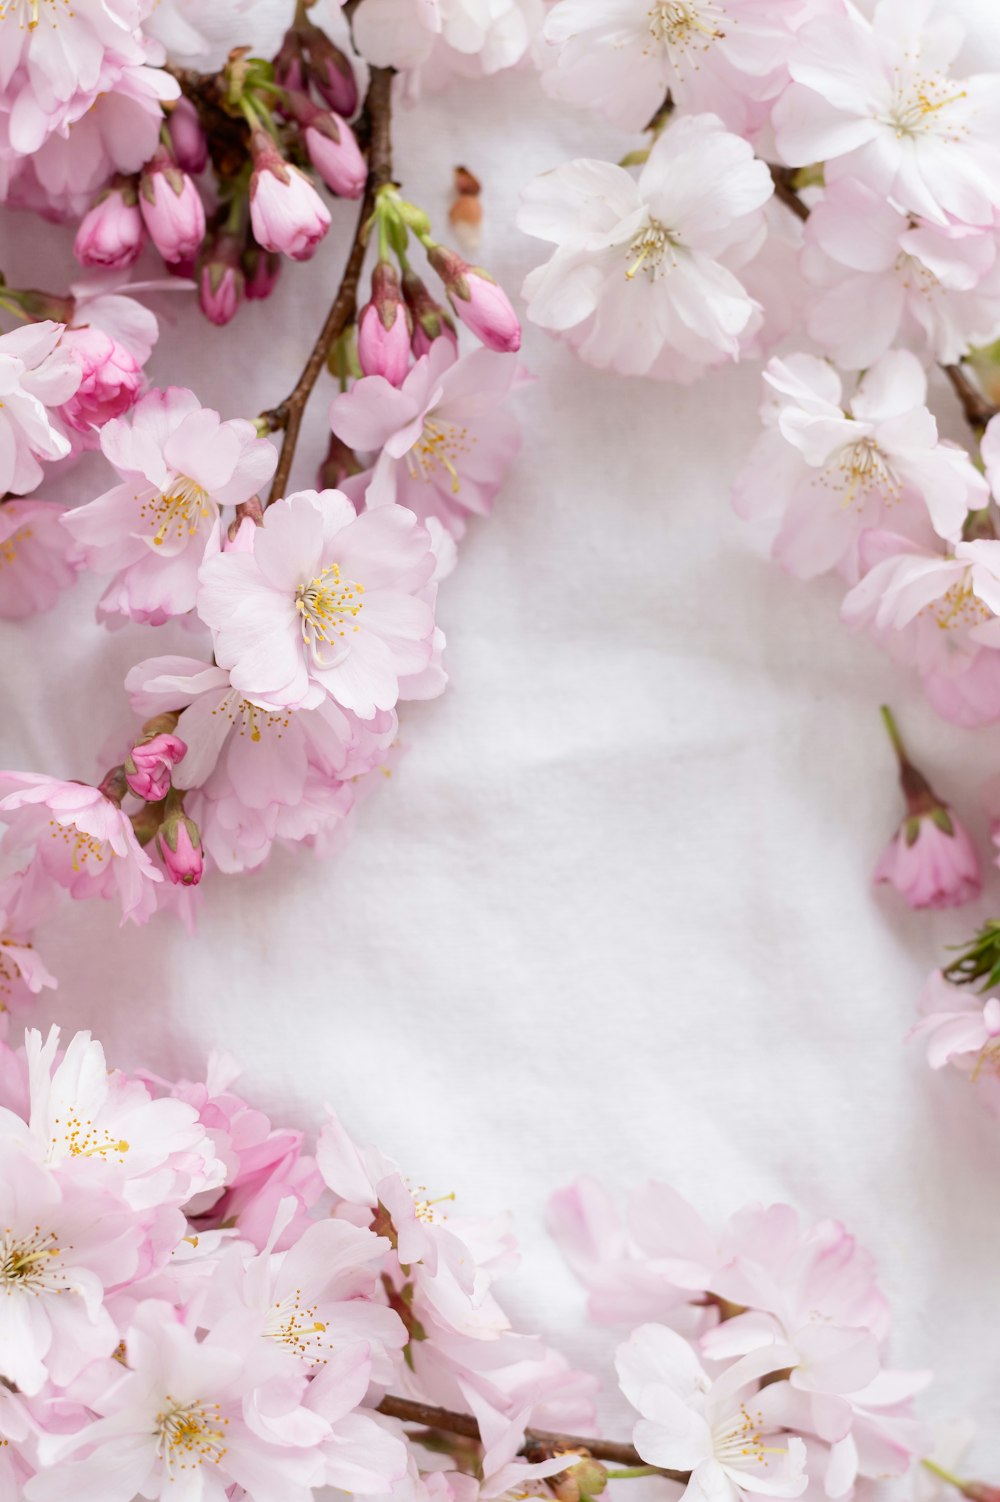 Những bông hoa trắng và hồng trên vải trắng như một tác phẩm nghệ thuật hoàn hảo, tô điểm cho bức tranh cuộc đời của chúng ta. Hãy chiêm ngưỡng vẻ đẹp của những bông hoa trắng và hồng trong bức tranh này và cảm nhận sự thanh tịnh và yên bình nơi tâm hồn mình.